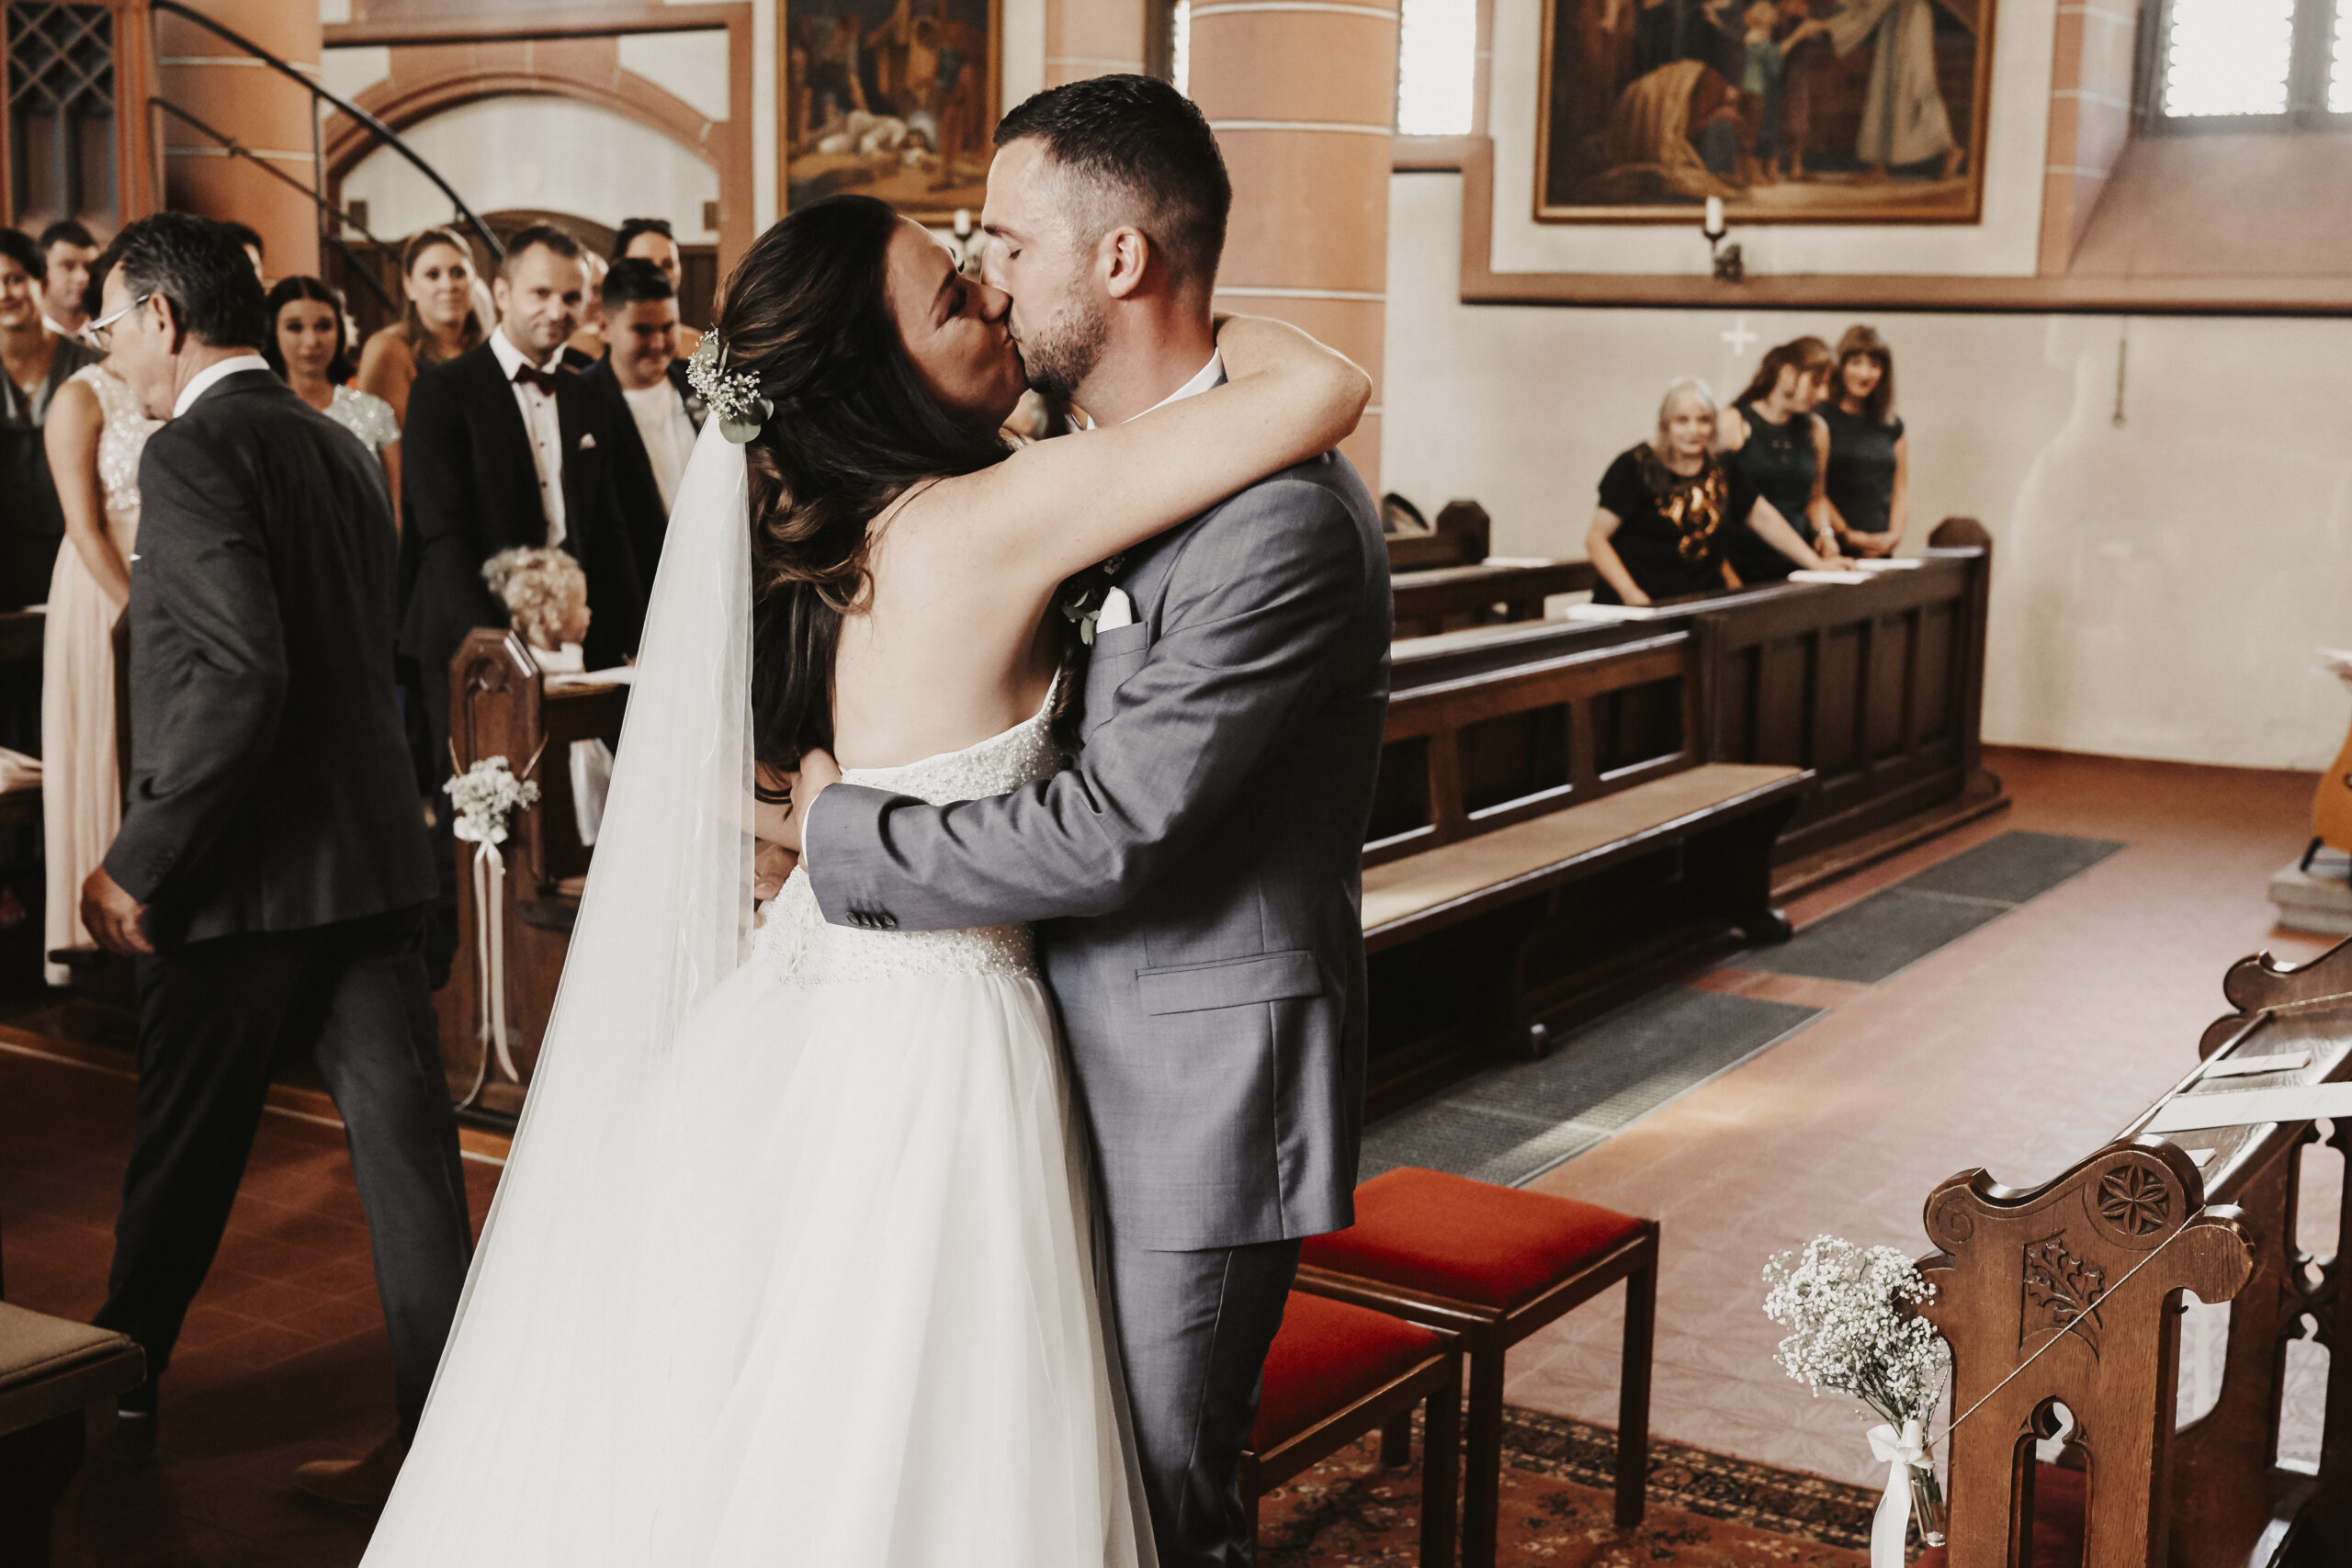 Das Brautpaar küsst sich in der Kirche nach dem der Brautvater die Braut zum Altar als Einlauf begleitet hat.